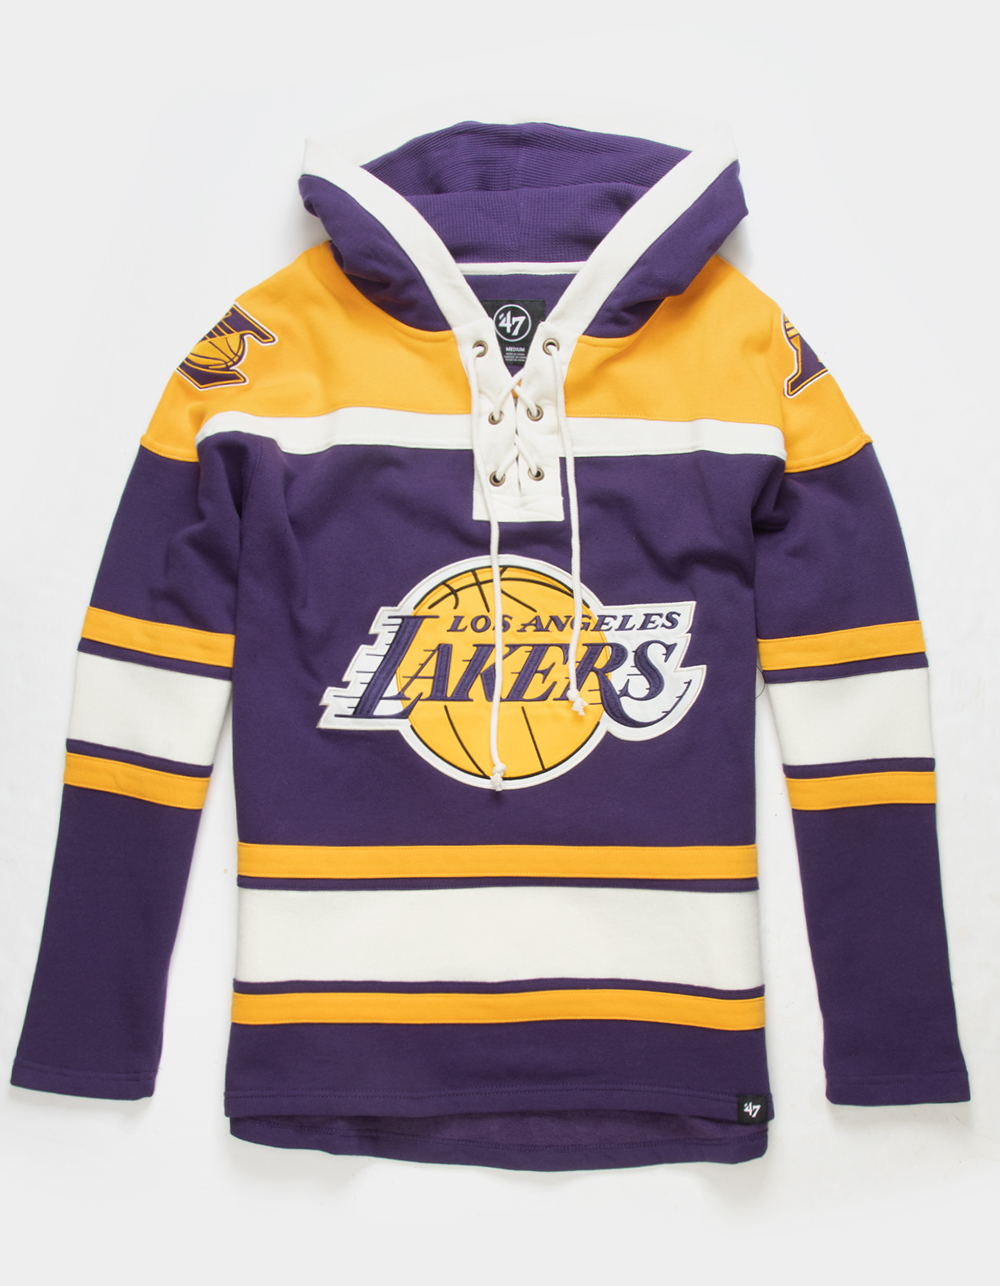 Lakers 24 Hoodie on Sale, SAVE 50% 